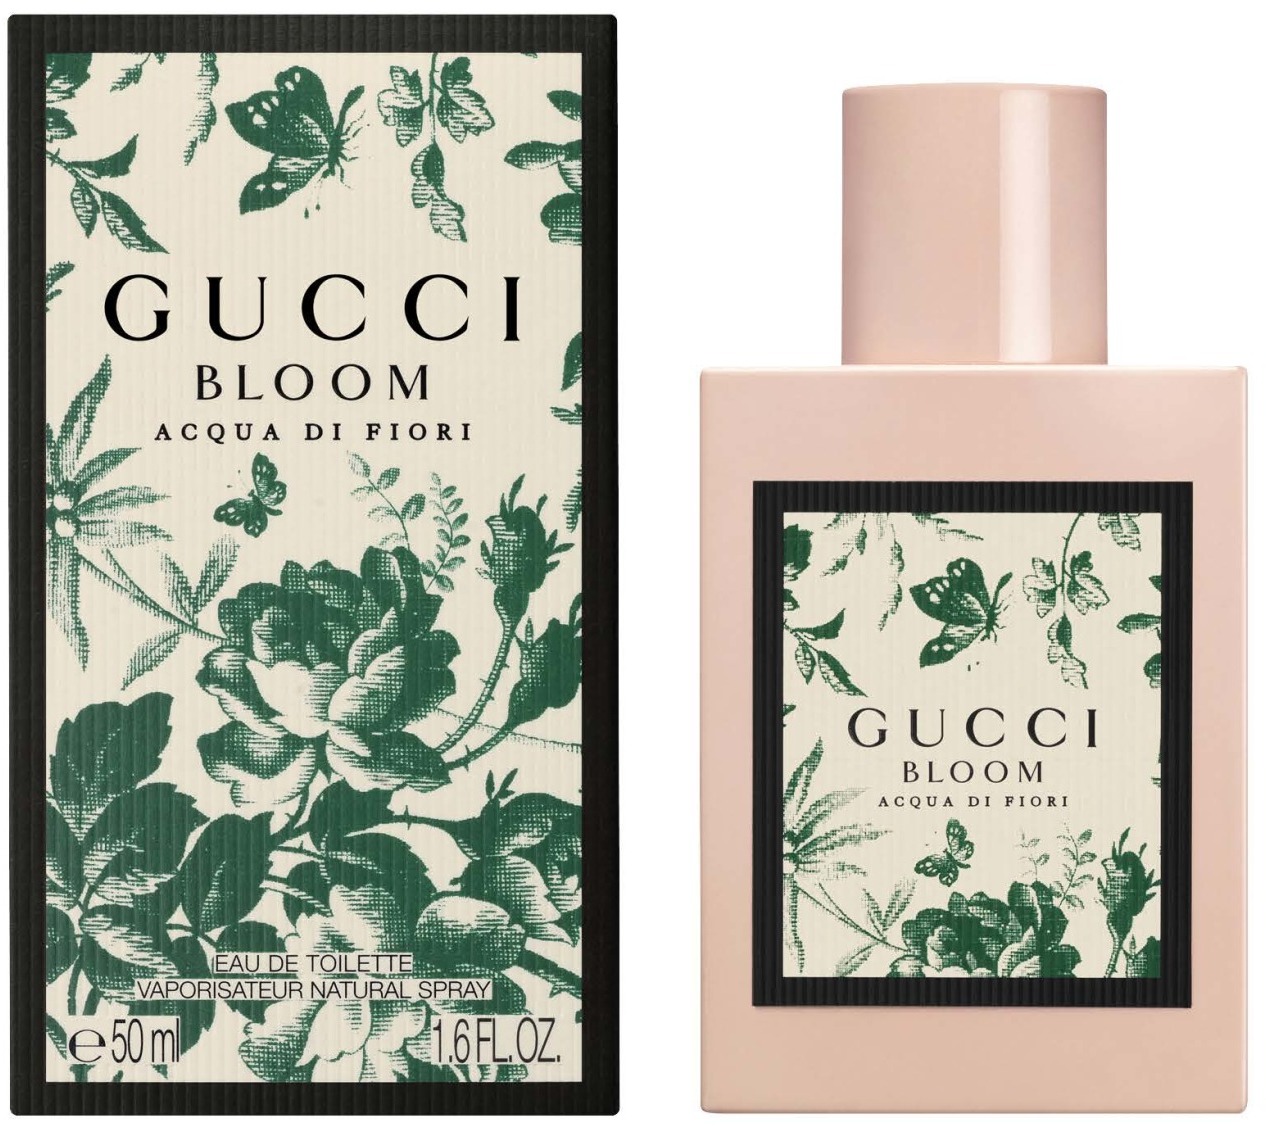 Gucci Bloom Acqua di Fiori EdT 50ml in 